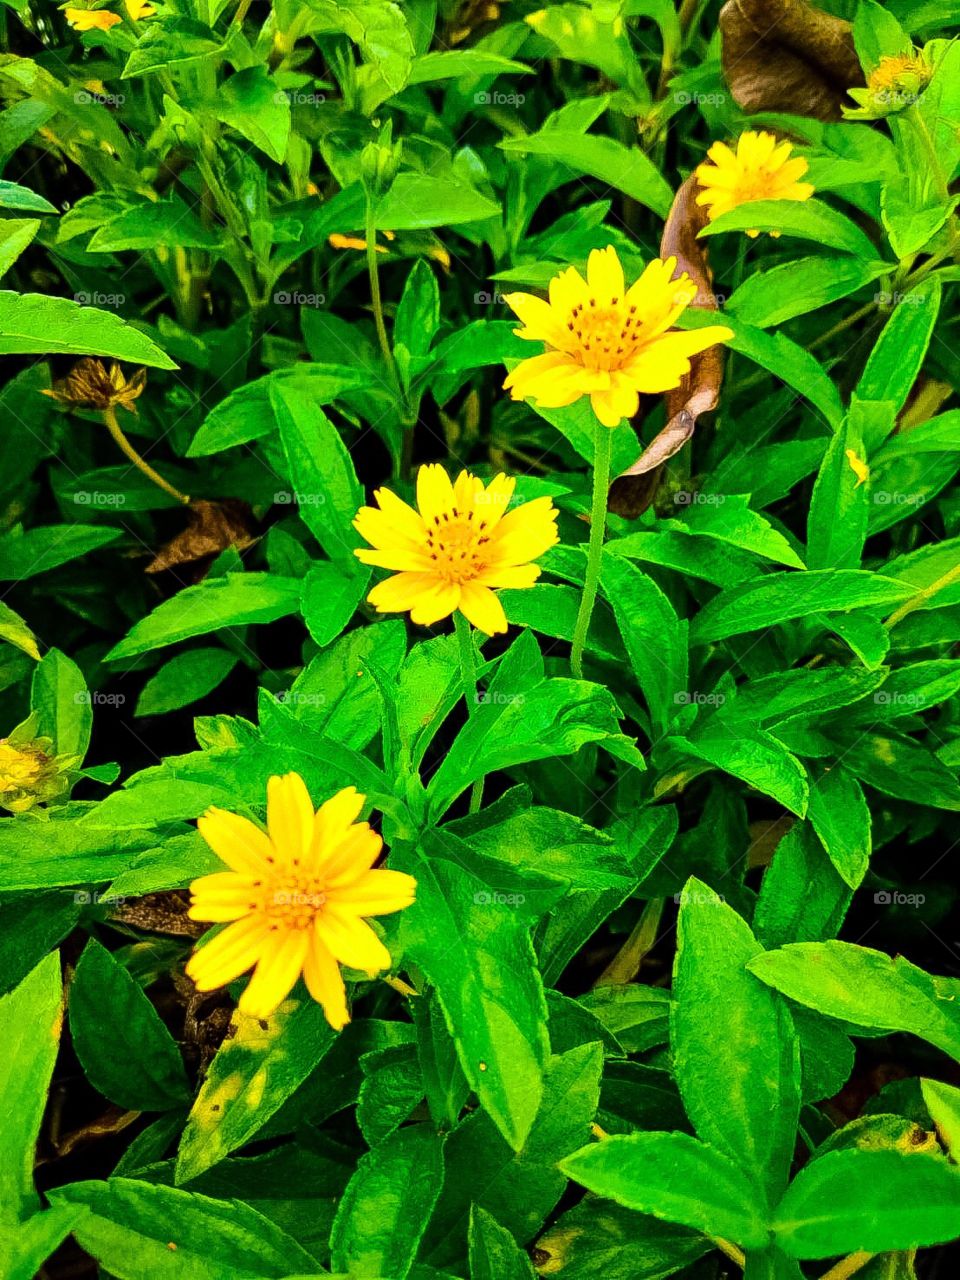 yellow cosmos flowers in my garden.